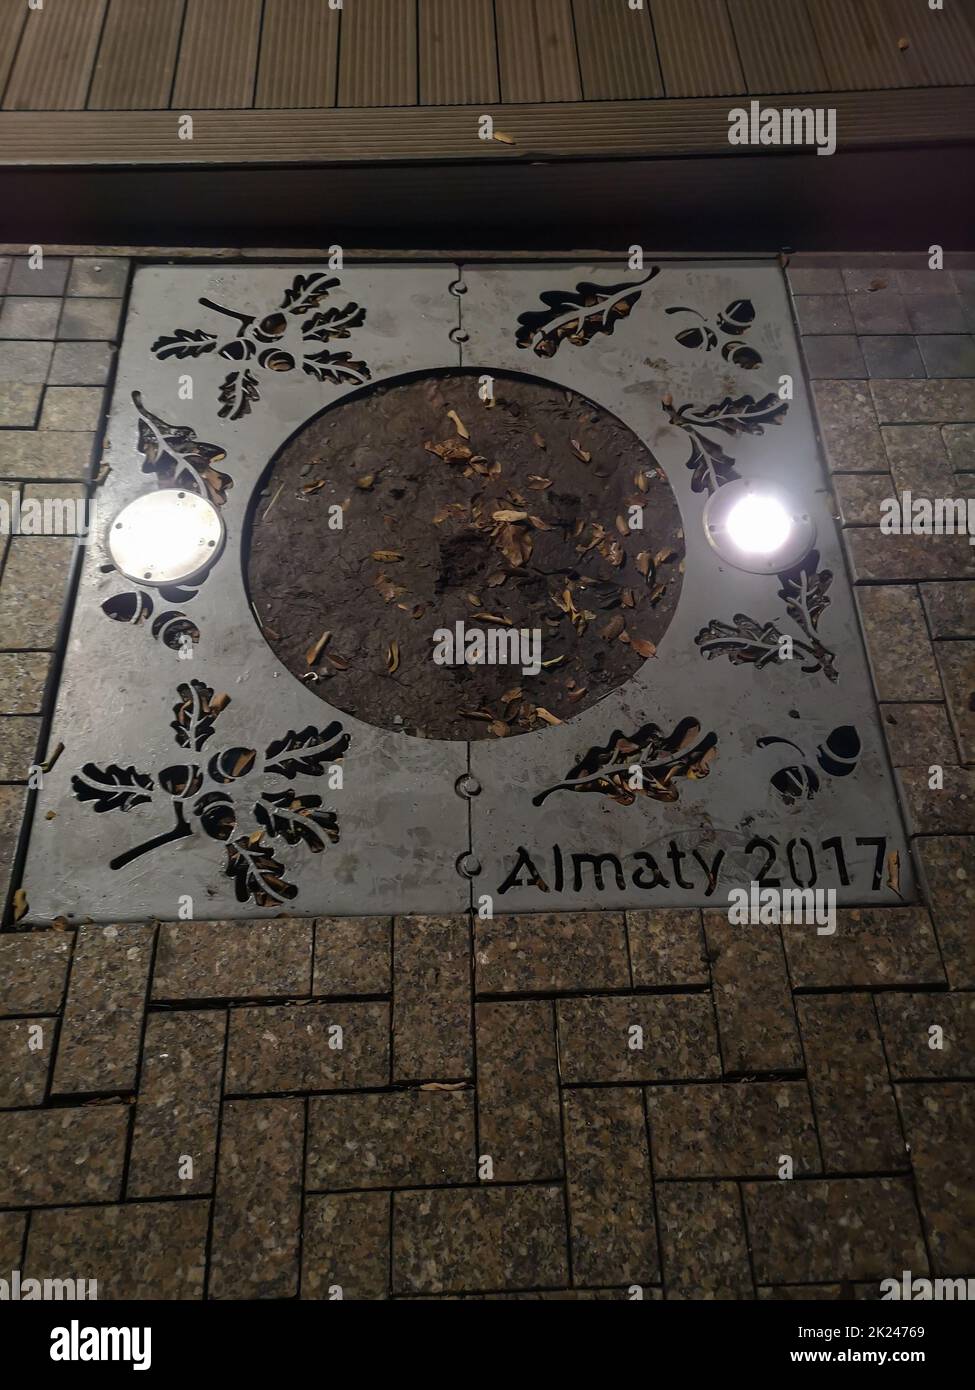 ALMATY, KAZAKHSTAN - 8 NOVEMBRE 2019 : râle latéral, perforé avec des images de feuilles de chêne et d'acornes avec l'inscription Almaty 2017. Banque D'Images